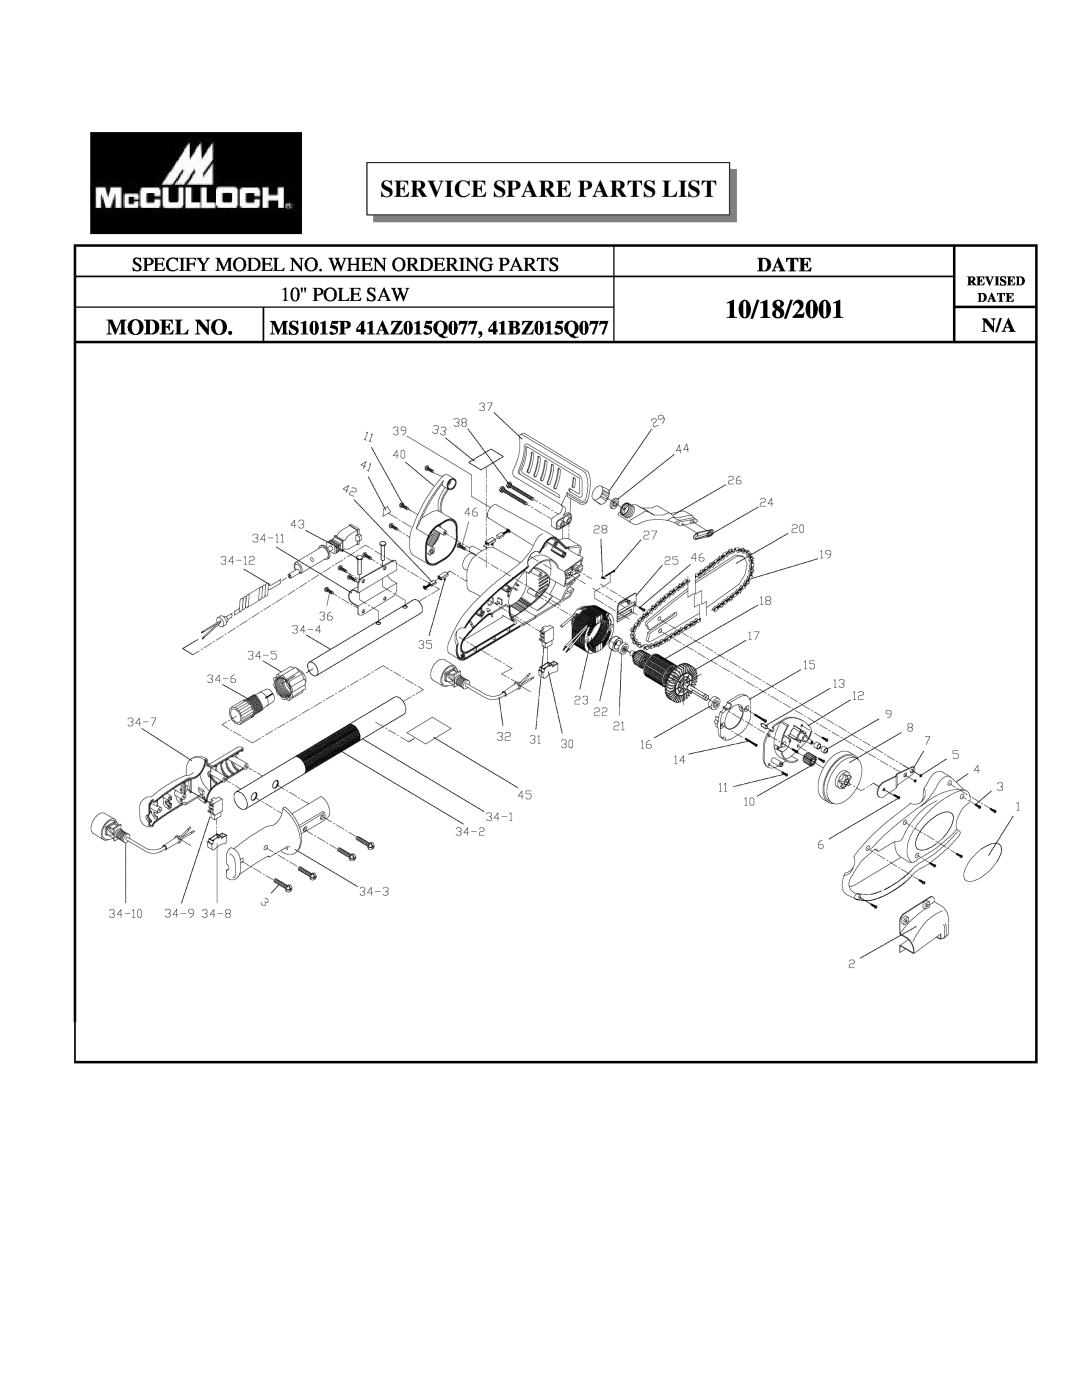 McCulloch manual 10/18/2001, Service Spare Parts List, Model No, Pole Saw, MS1015P 41AZ015Q077, 41BZ015Q077, Date 